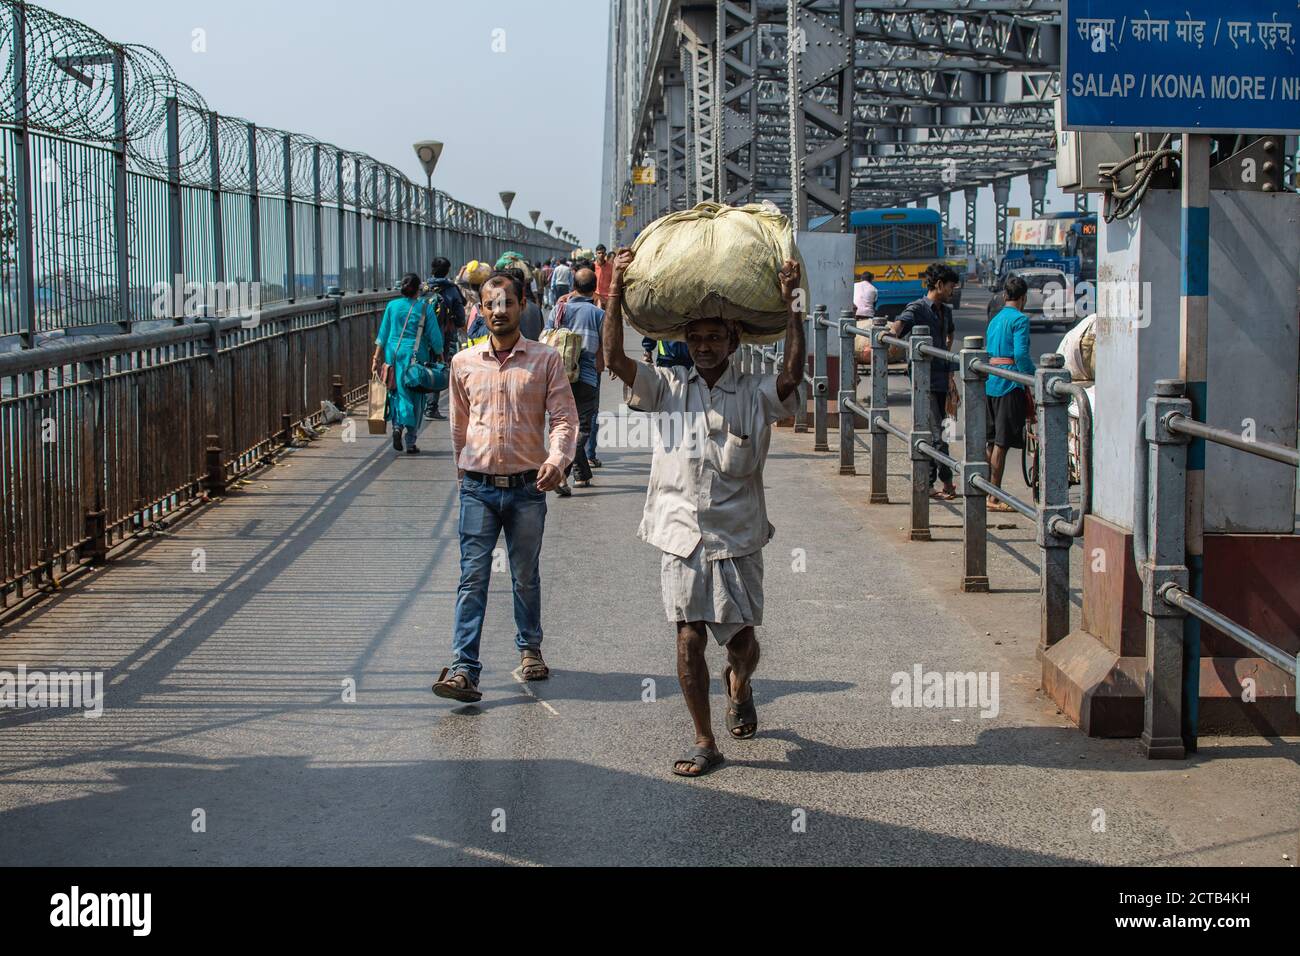 Kolkata, India - 2 de febrero de 2020: Peatones no identificados caminan sobre el puente de Howrah el 2 de febrero de 2020 en Kolkata, India Foto de stock